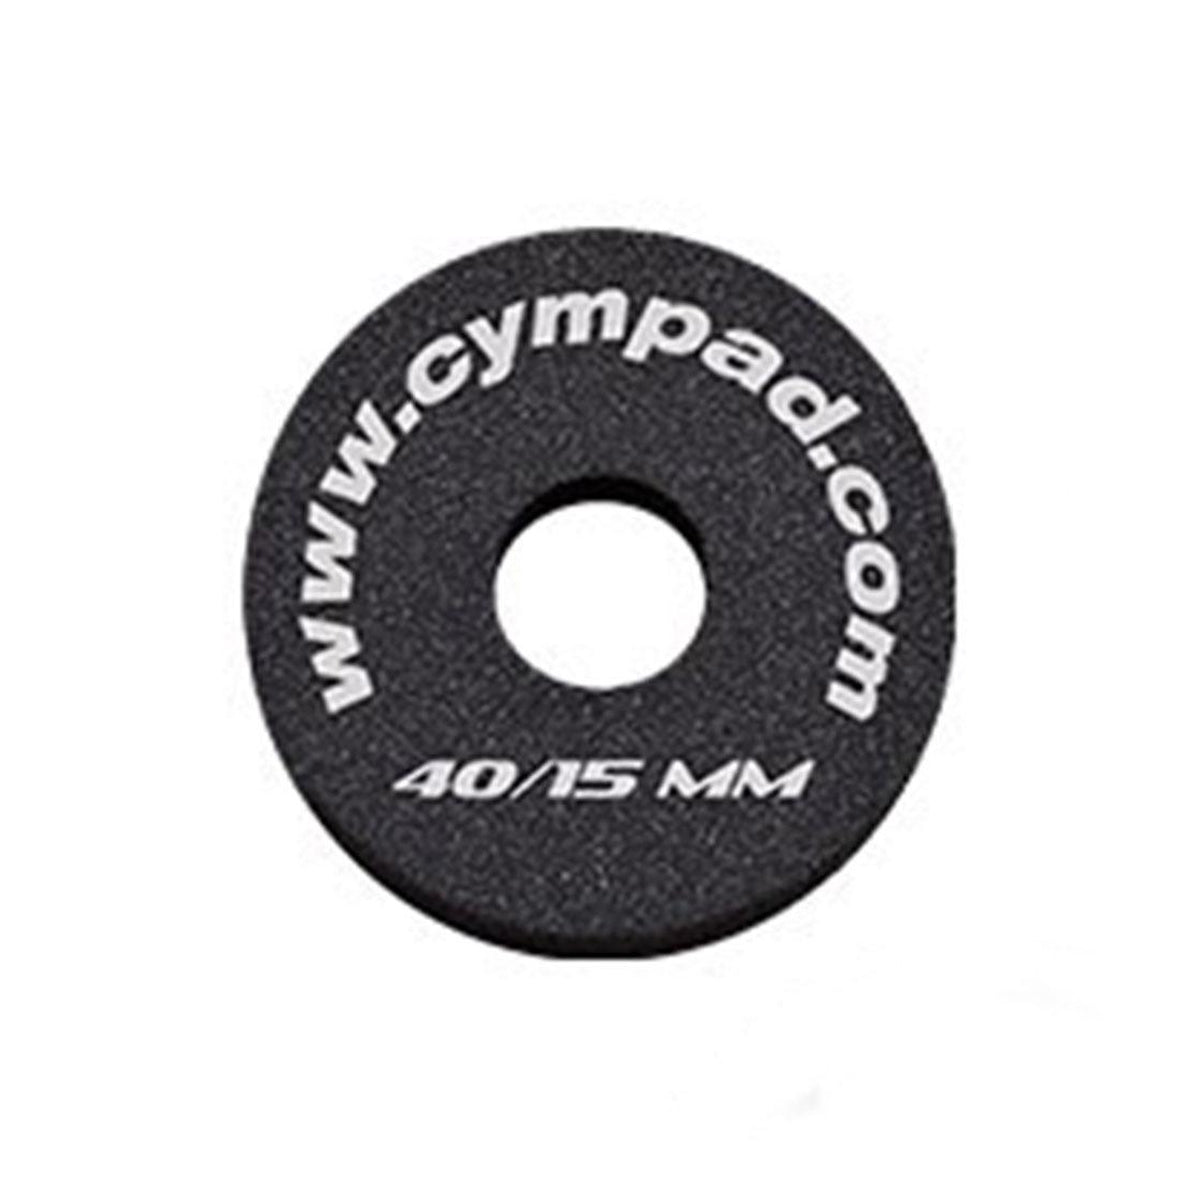 Cympad Optimizer 40/15mm Black (Individual)